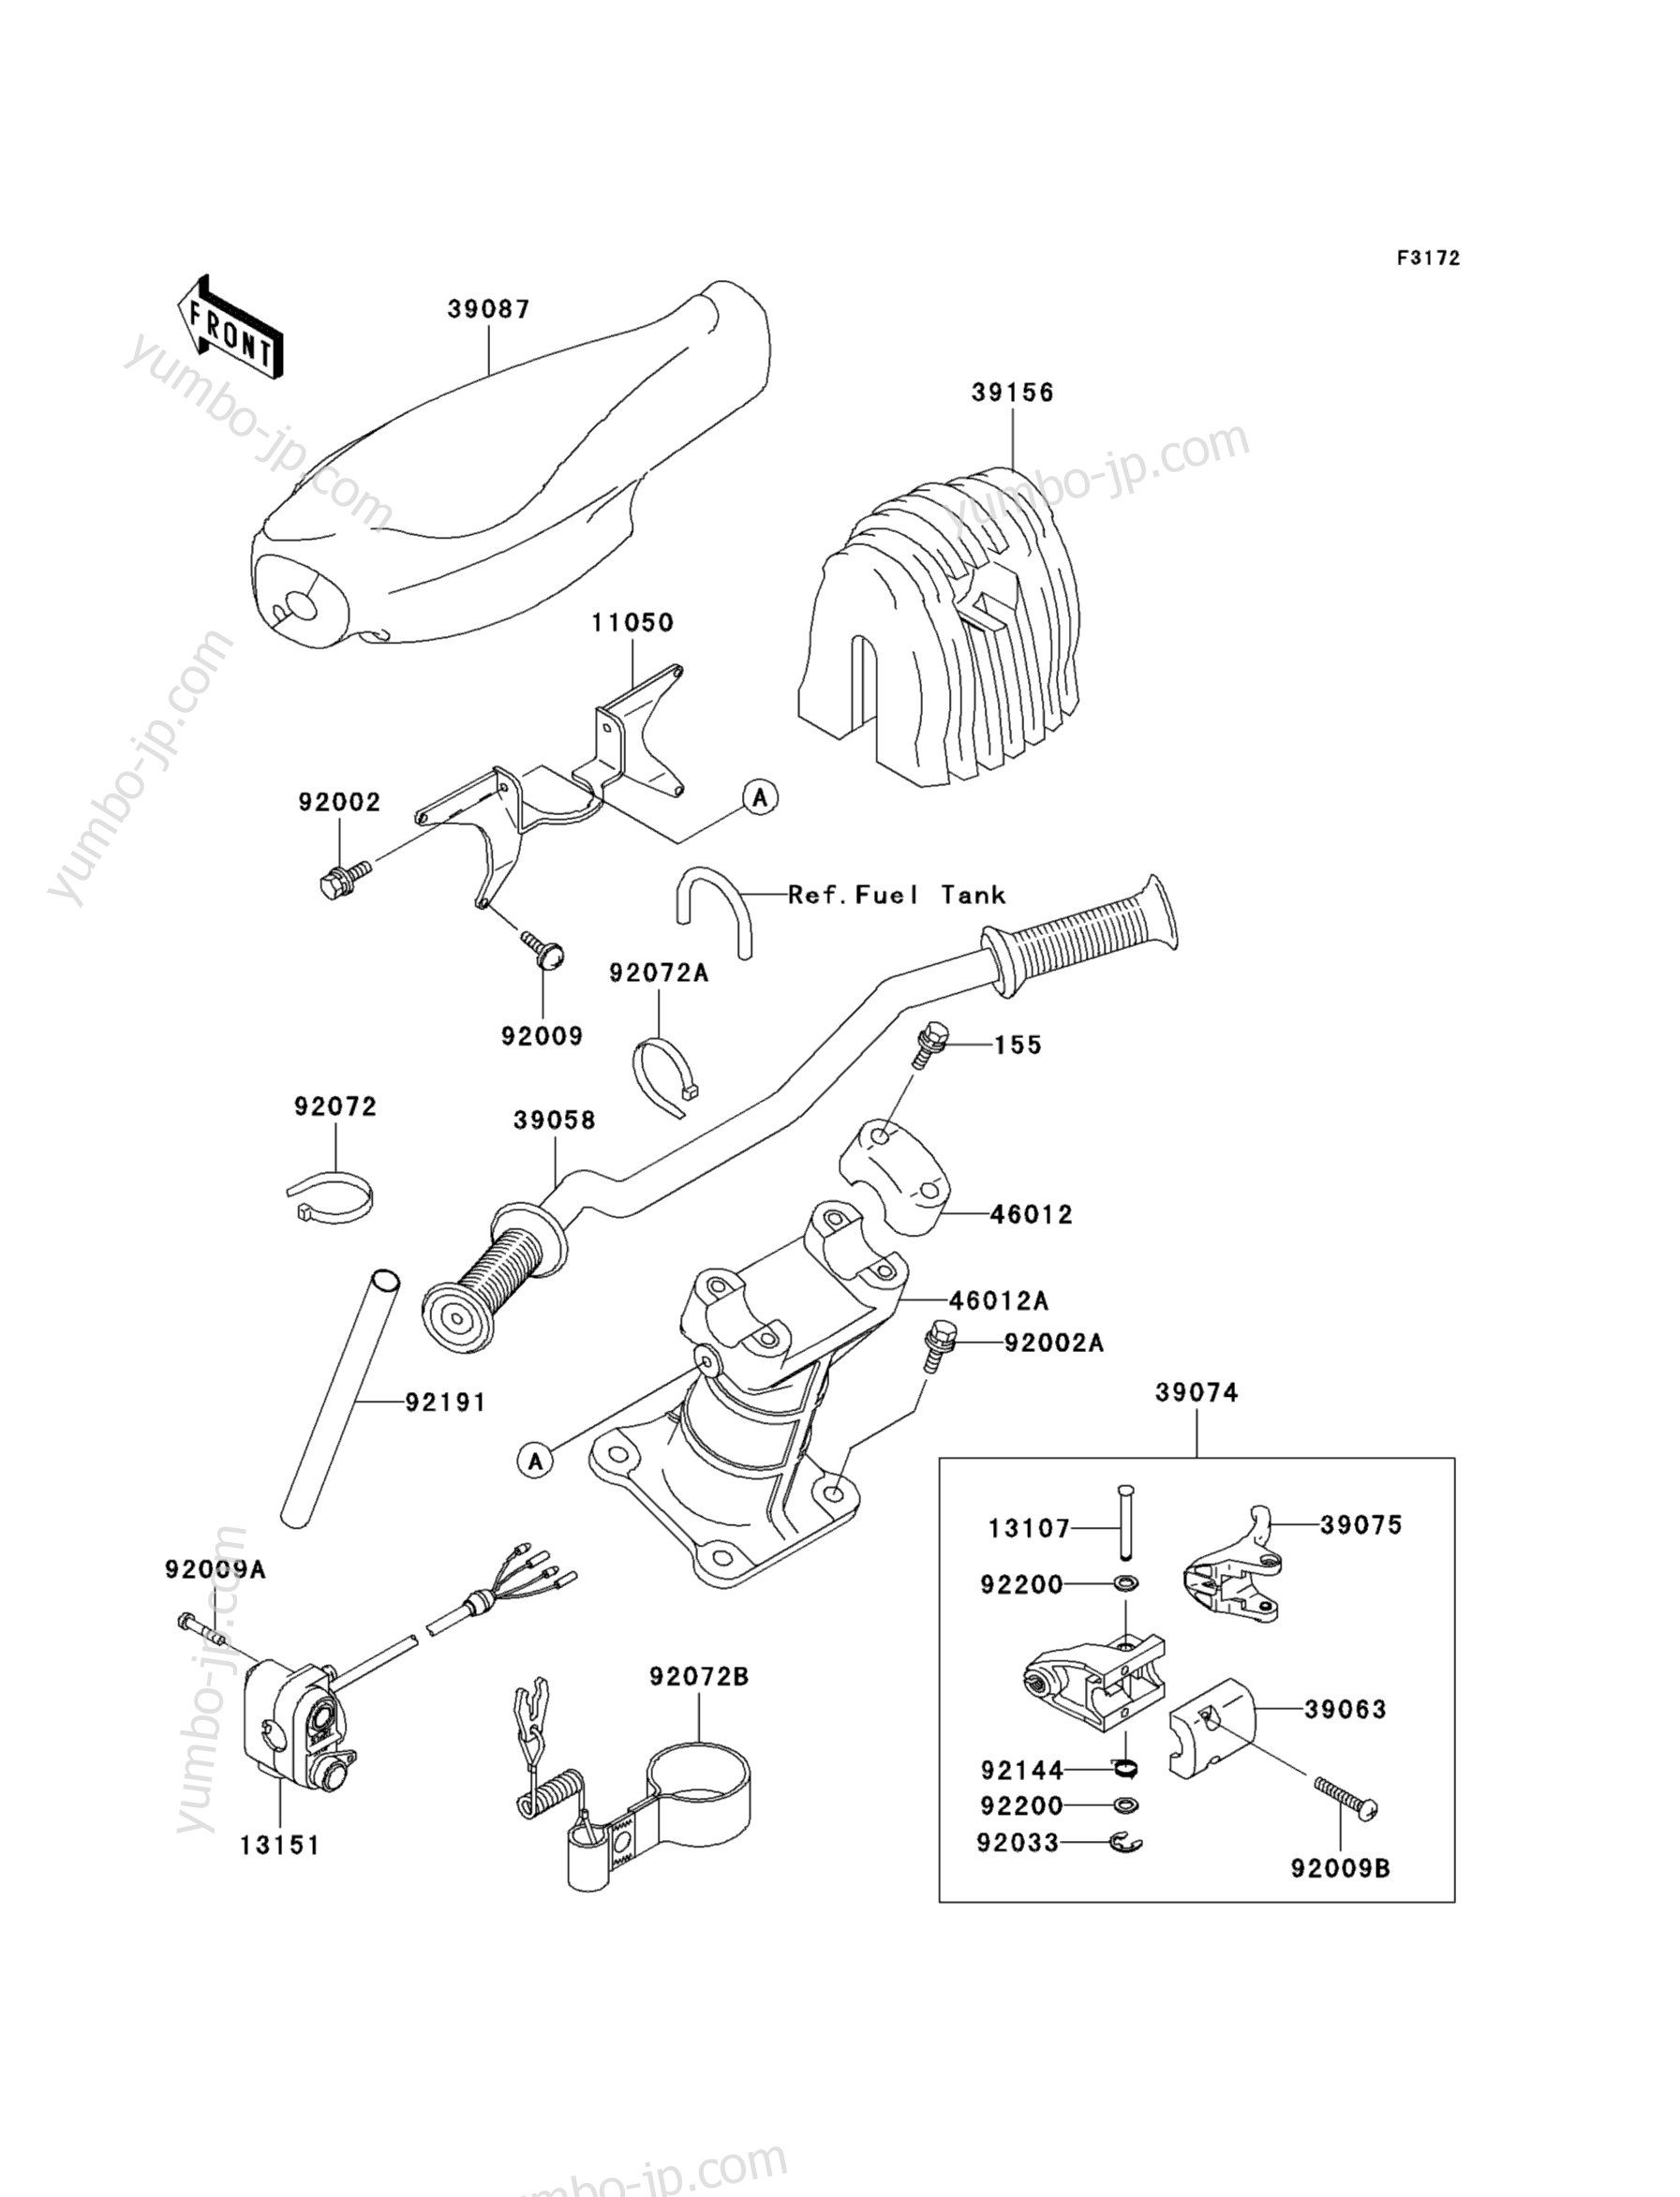 Румпель (рукоятка управления) для гидроциклов KAWASAKI JET SKI 1200 STX-R (JT1200-A2) 2003 г.